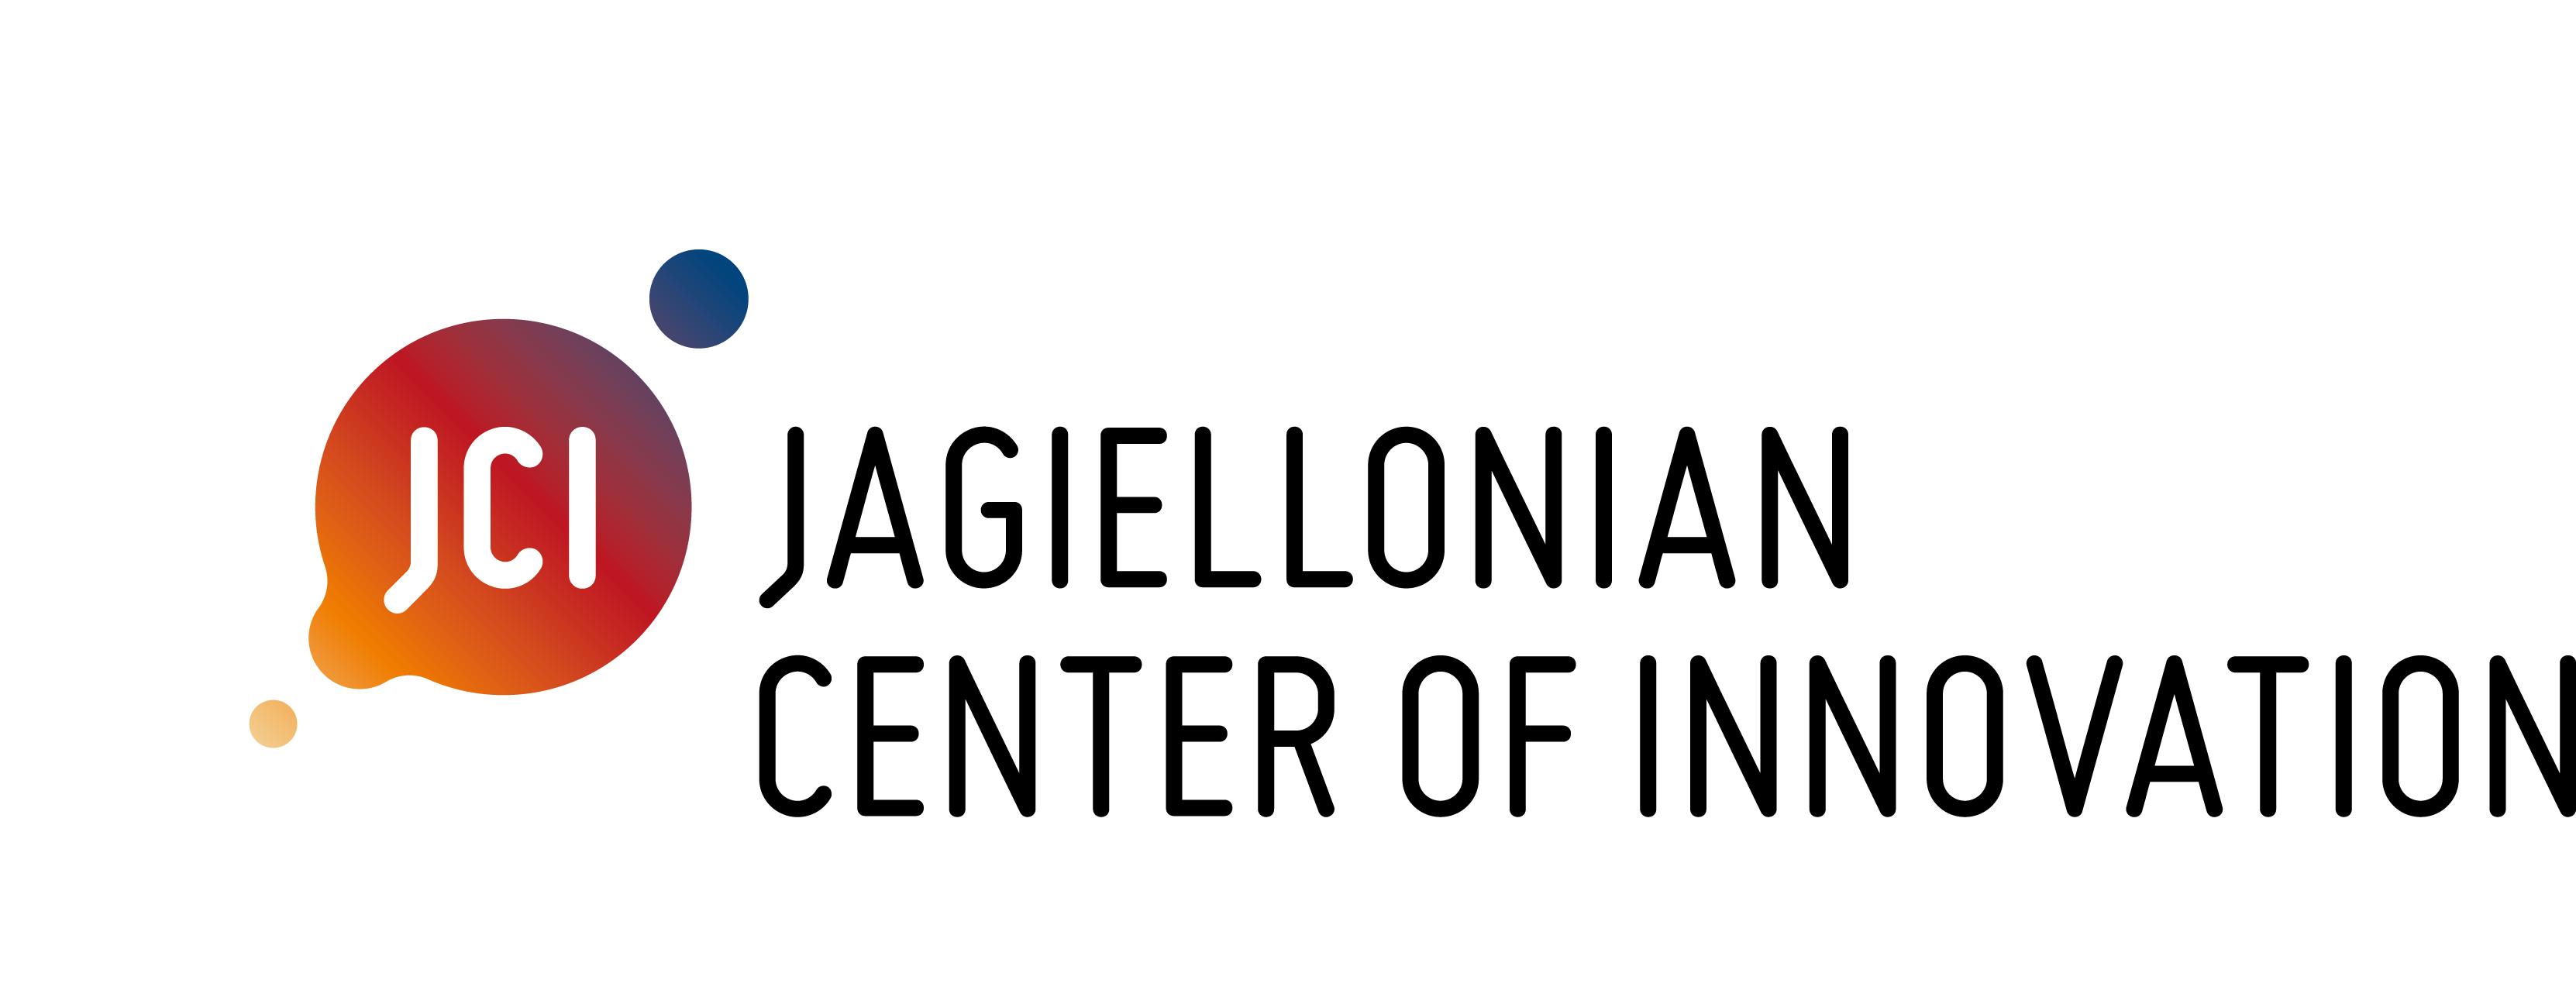 website of Jagiellonian Centre of Innovation